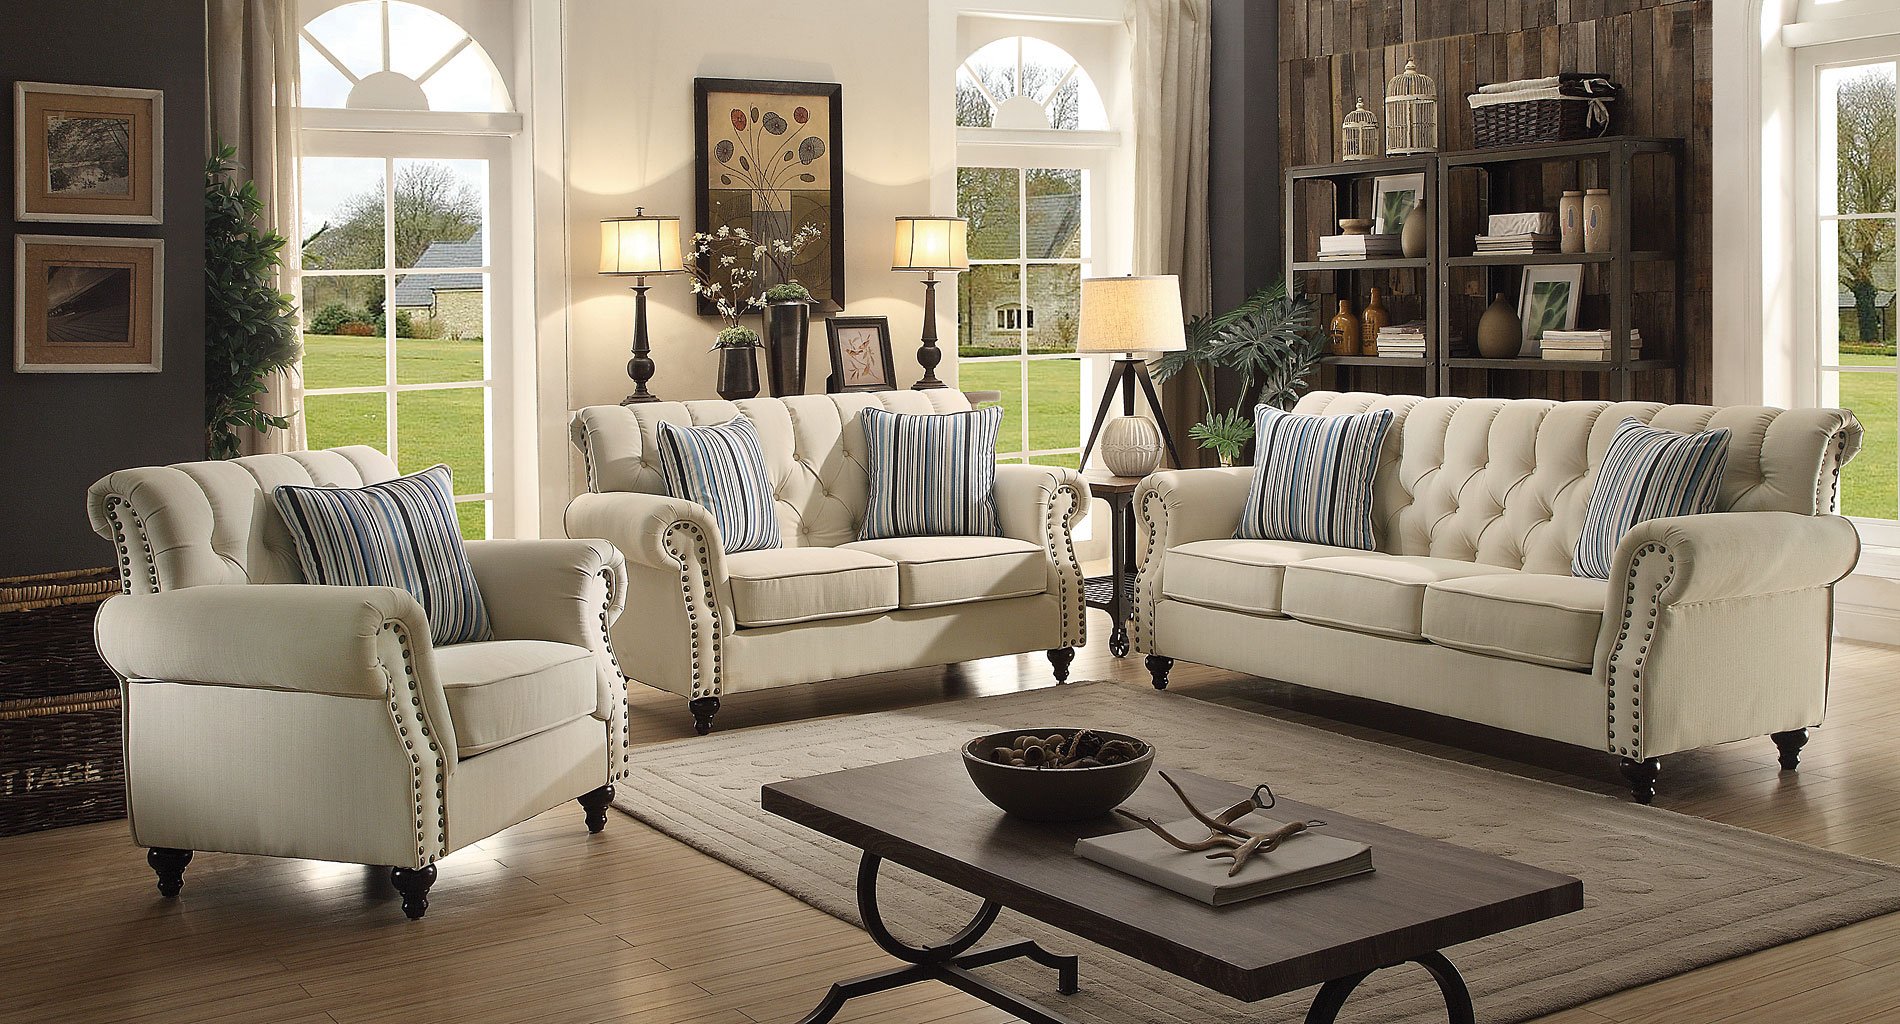 G523 Living Room Set (Cream) - Living Room Sets - Living Room Furniture